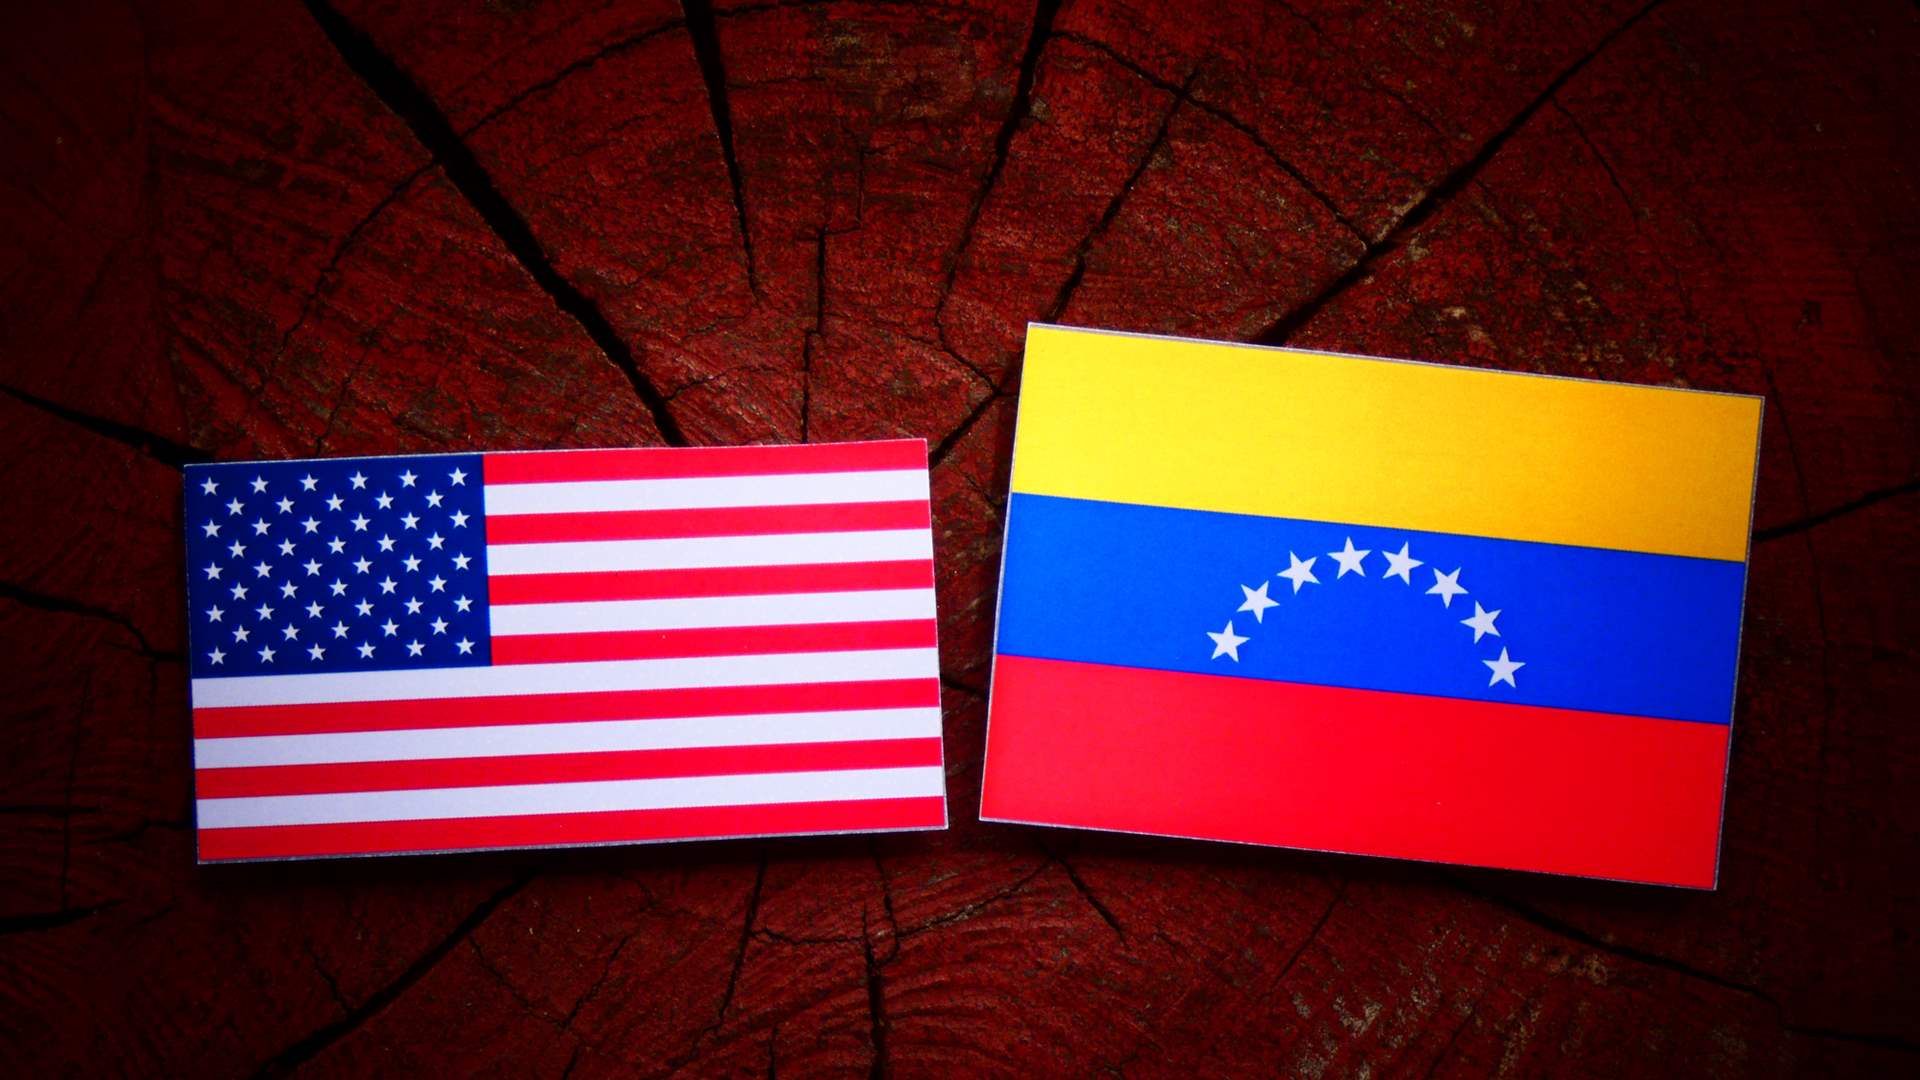 US: Venezuela failing to meet key commitments despite election announcement